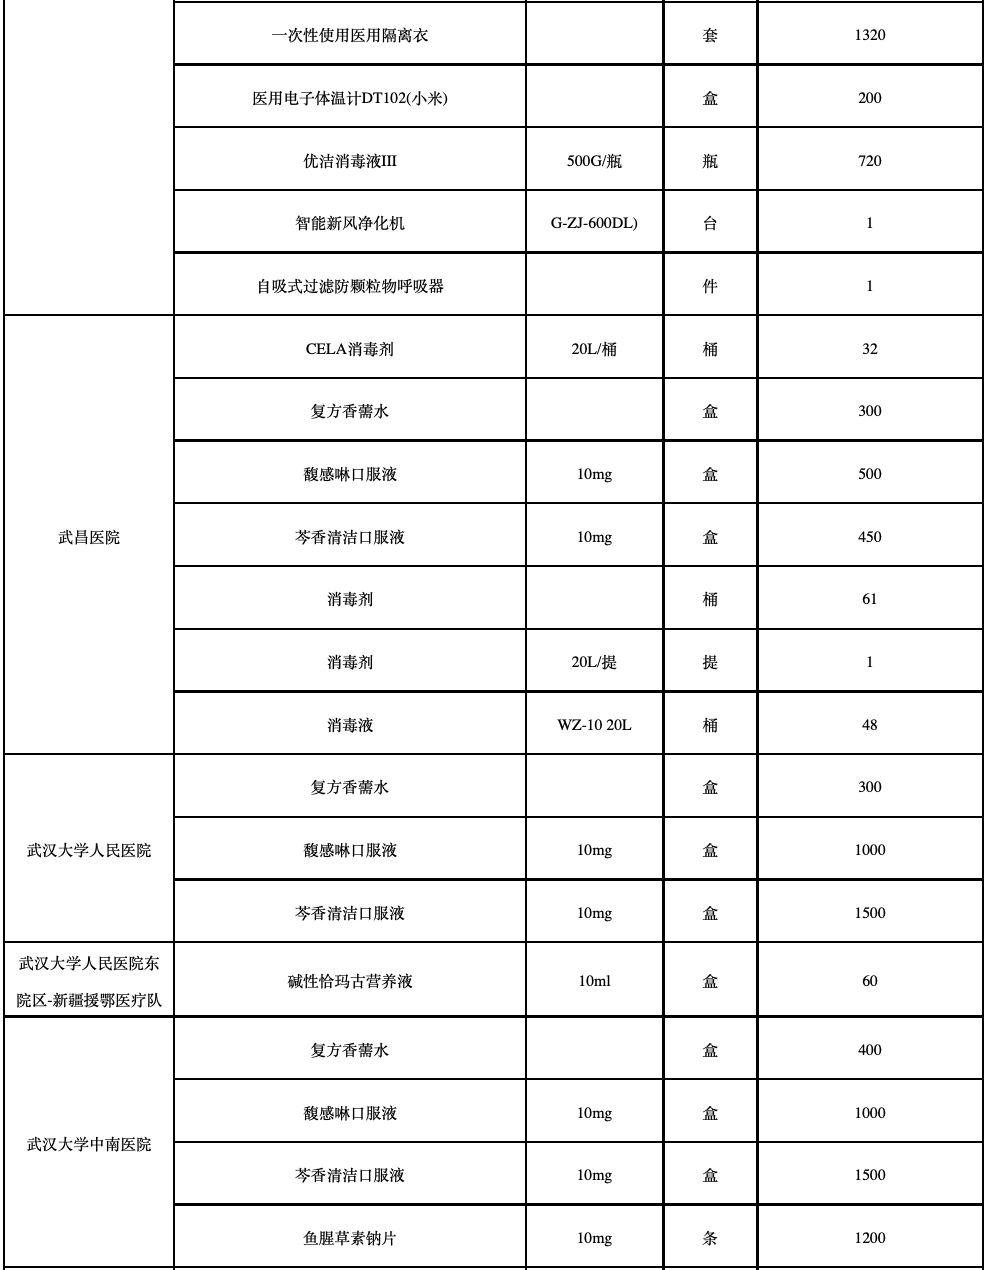 (2月18日)武汉市新冠肺炎疫情防控指挥部发放捐赠物资一览表